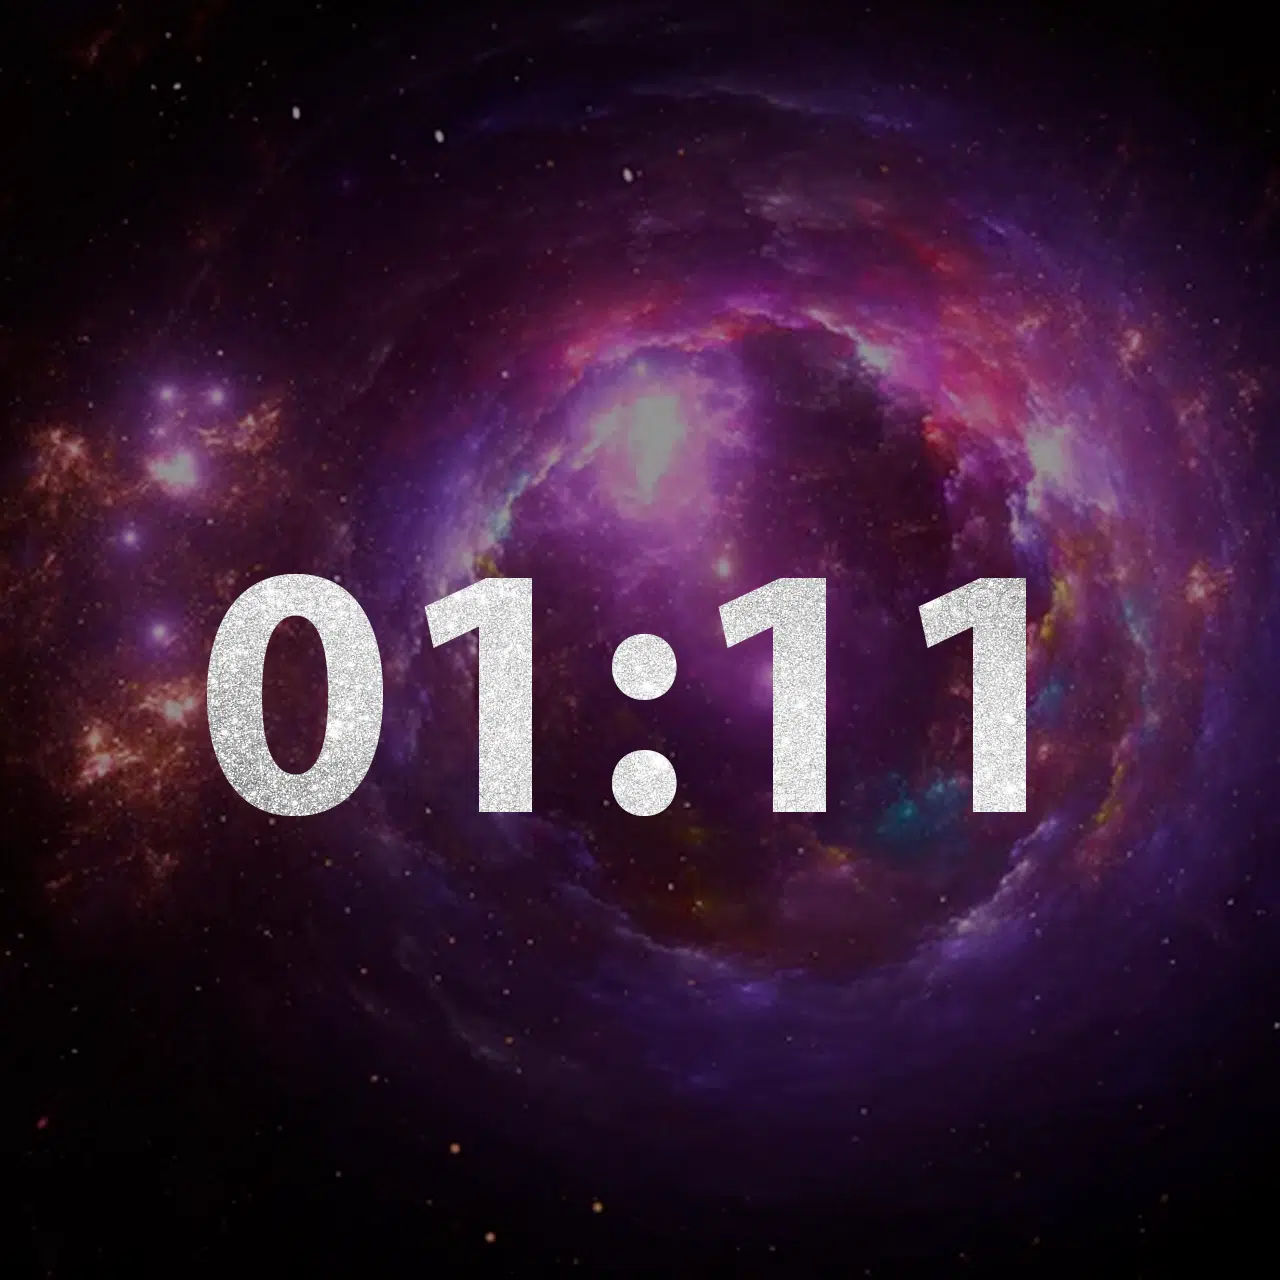 Alerta Do Universo? Veja O Significado Das Horas Triplas 01:11!